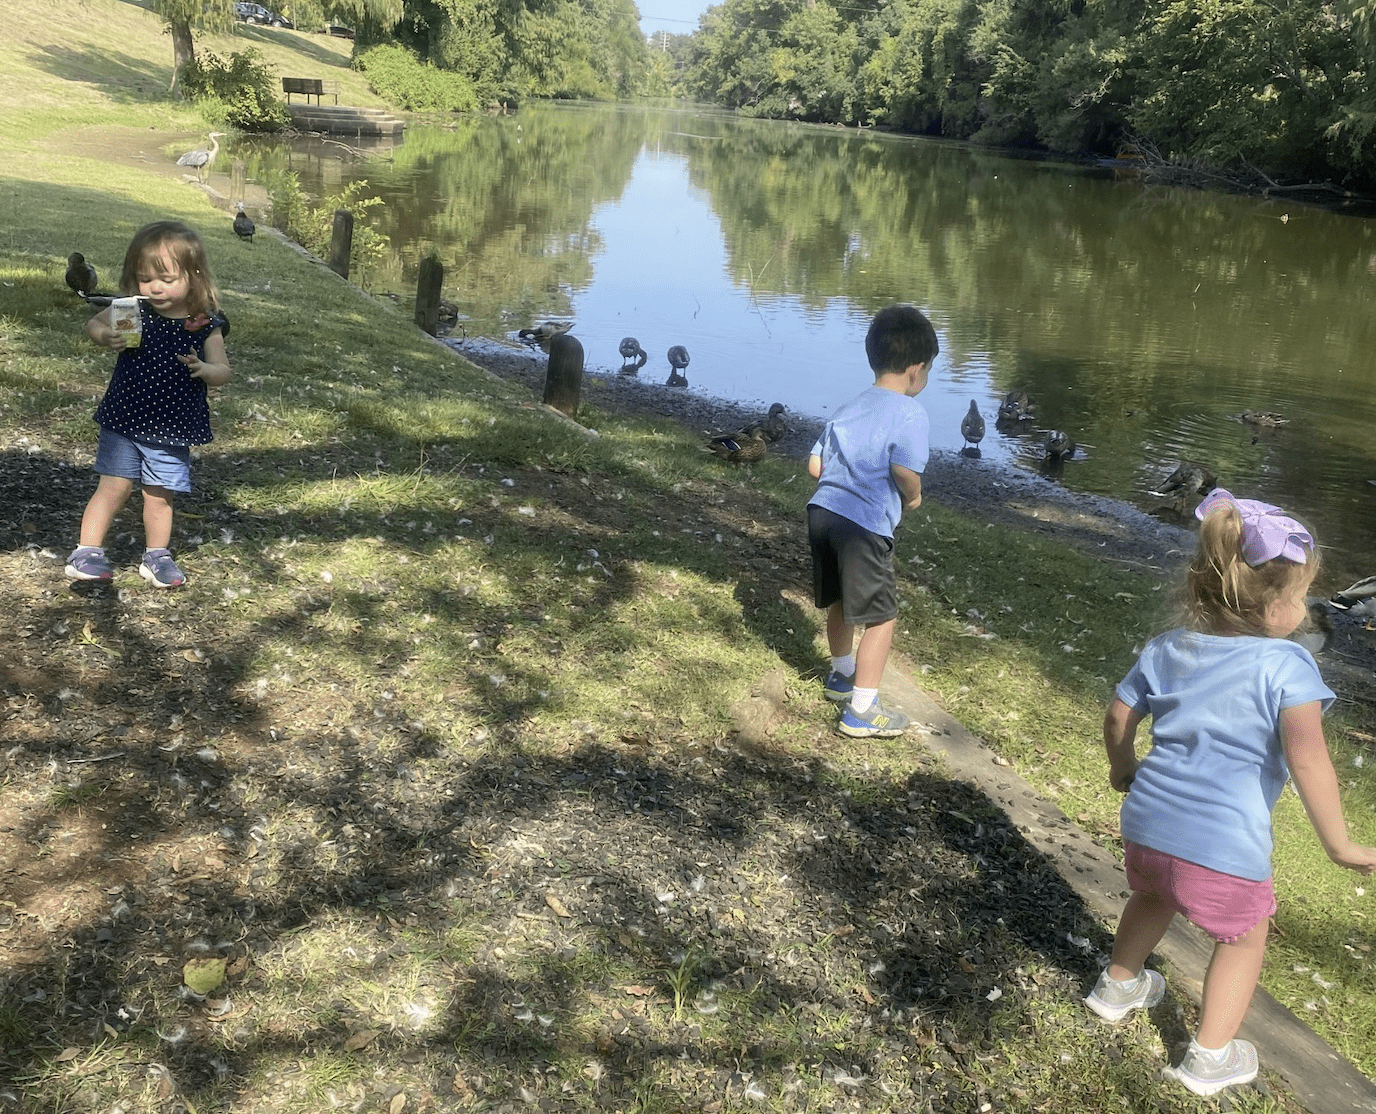 Feeding the ducks at AC Steere Park in Shreveport